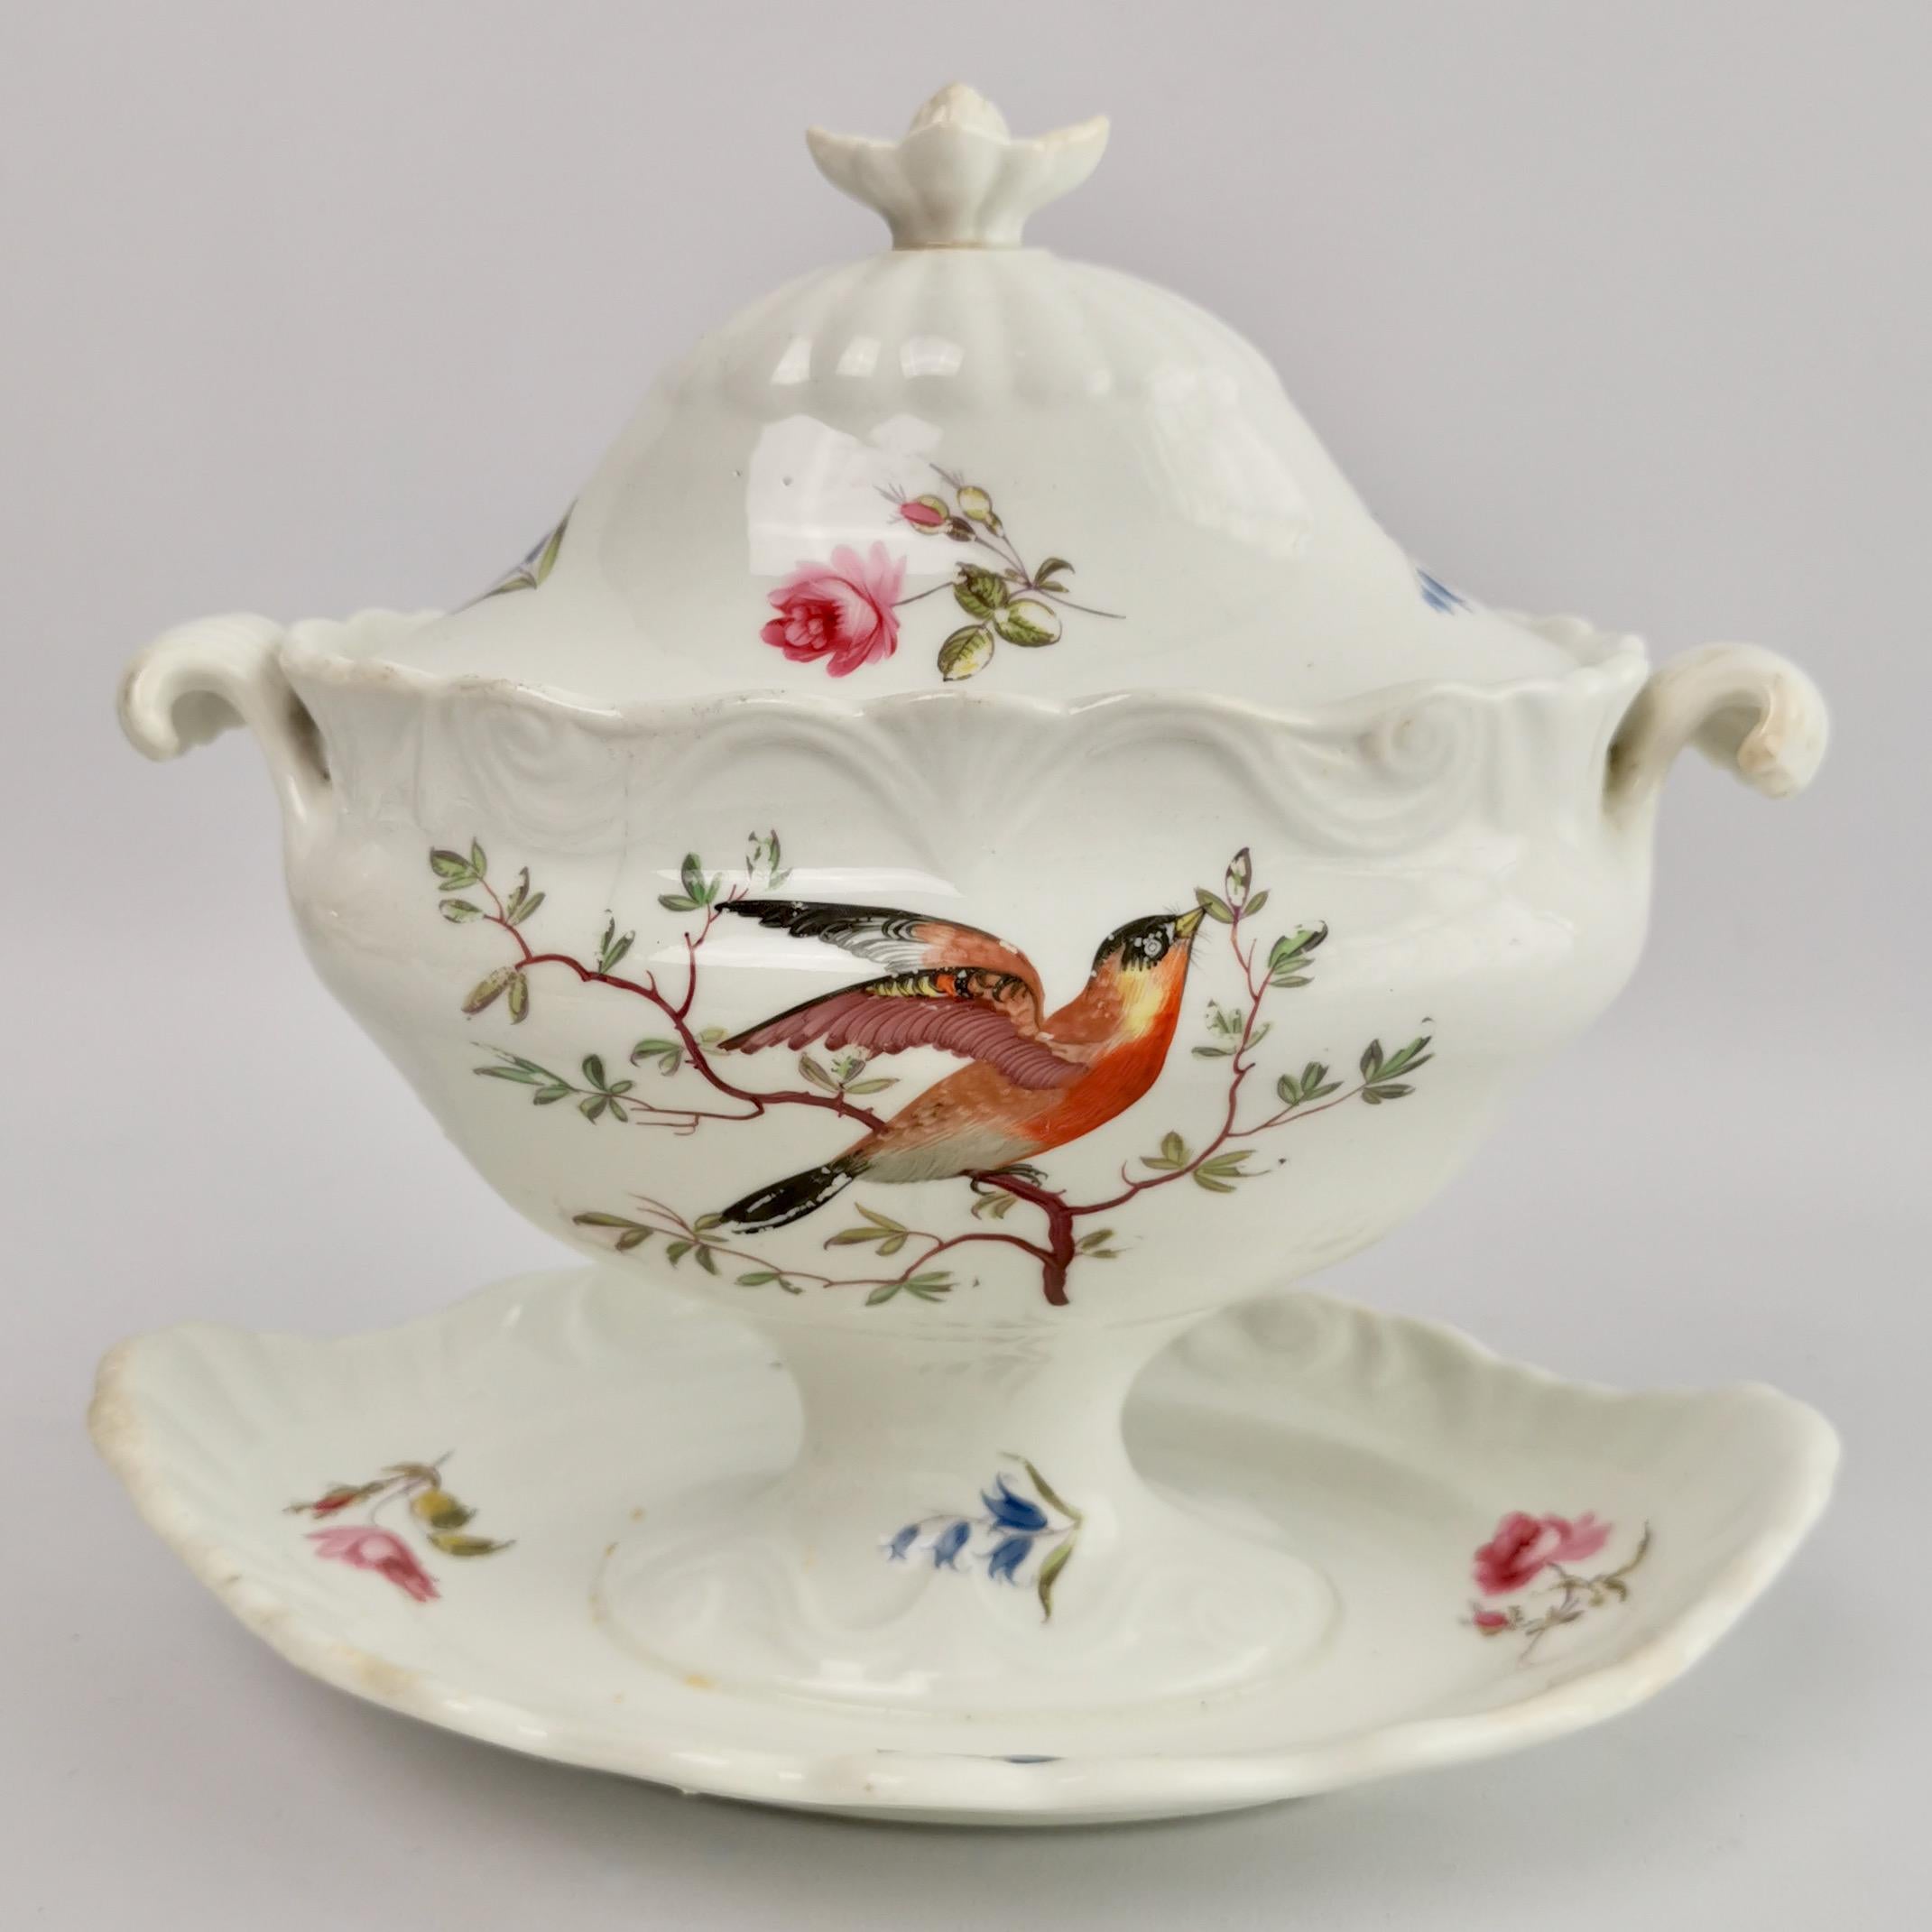 Hand-Painted Machin Porcelain Dessert Service, Moustache Shape, White, Birds, Regency ca 1820